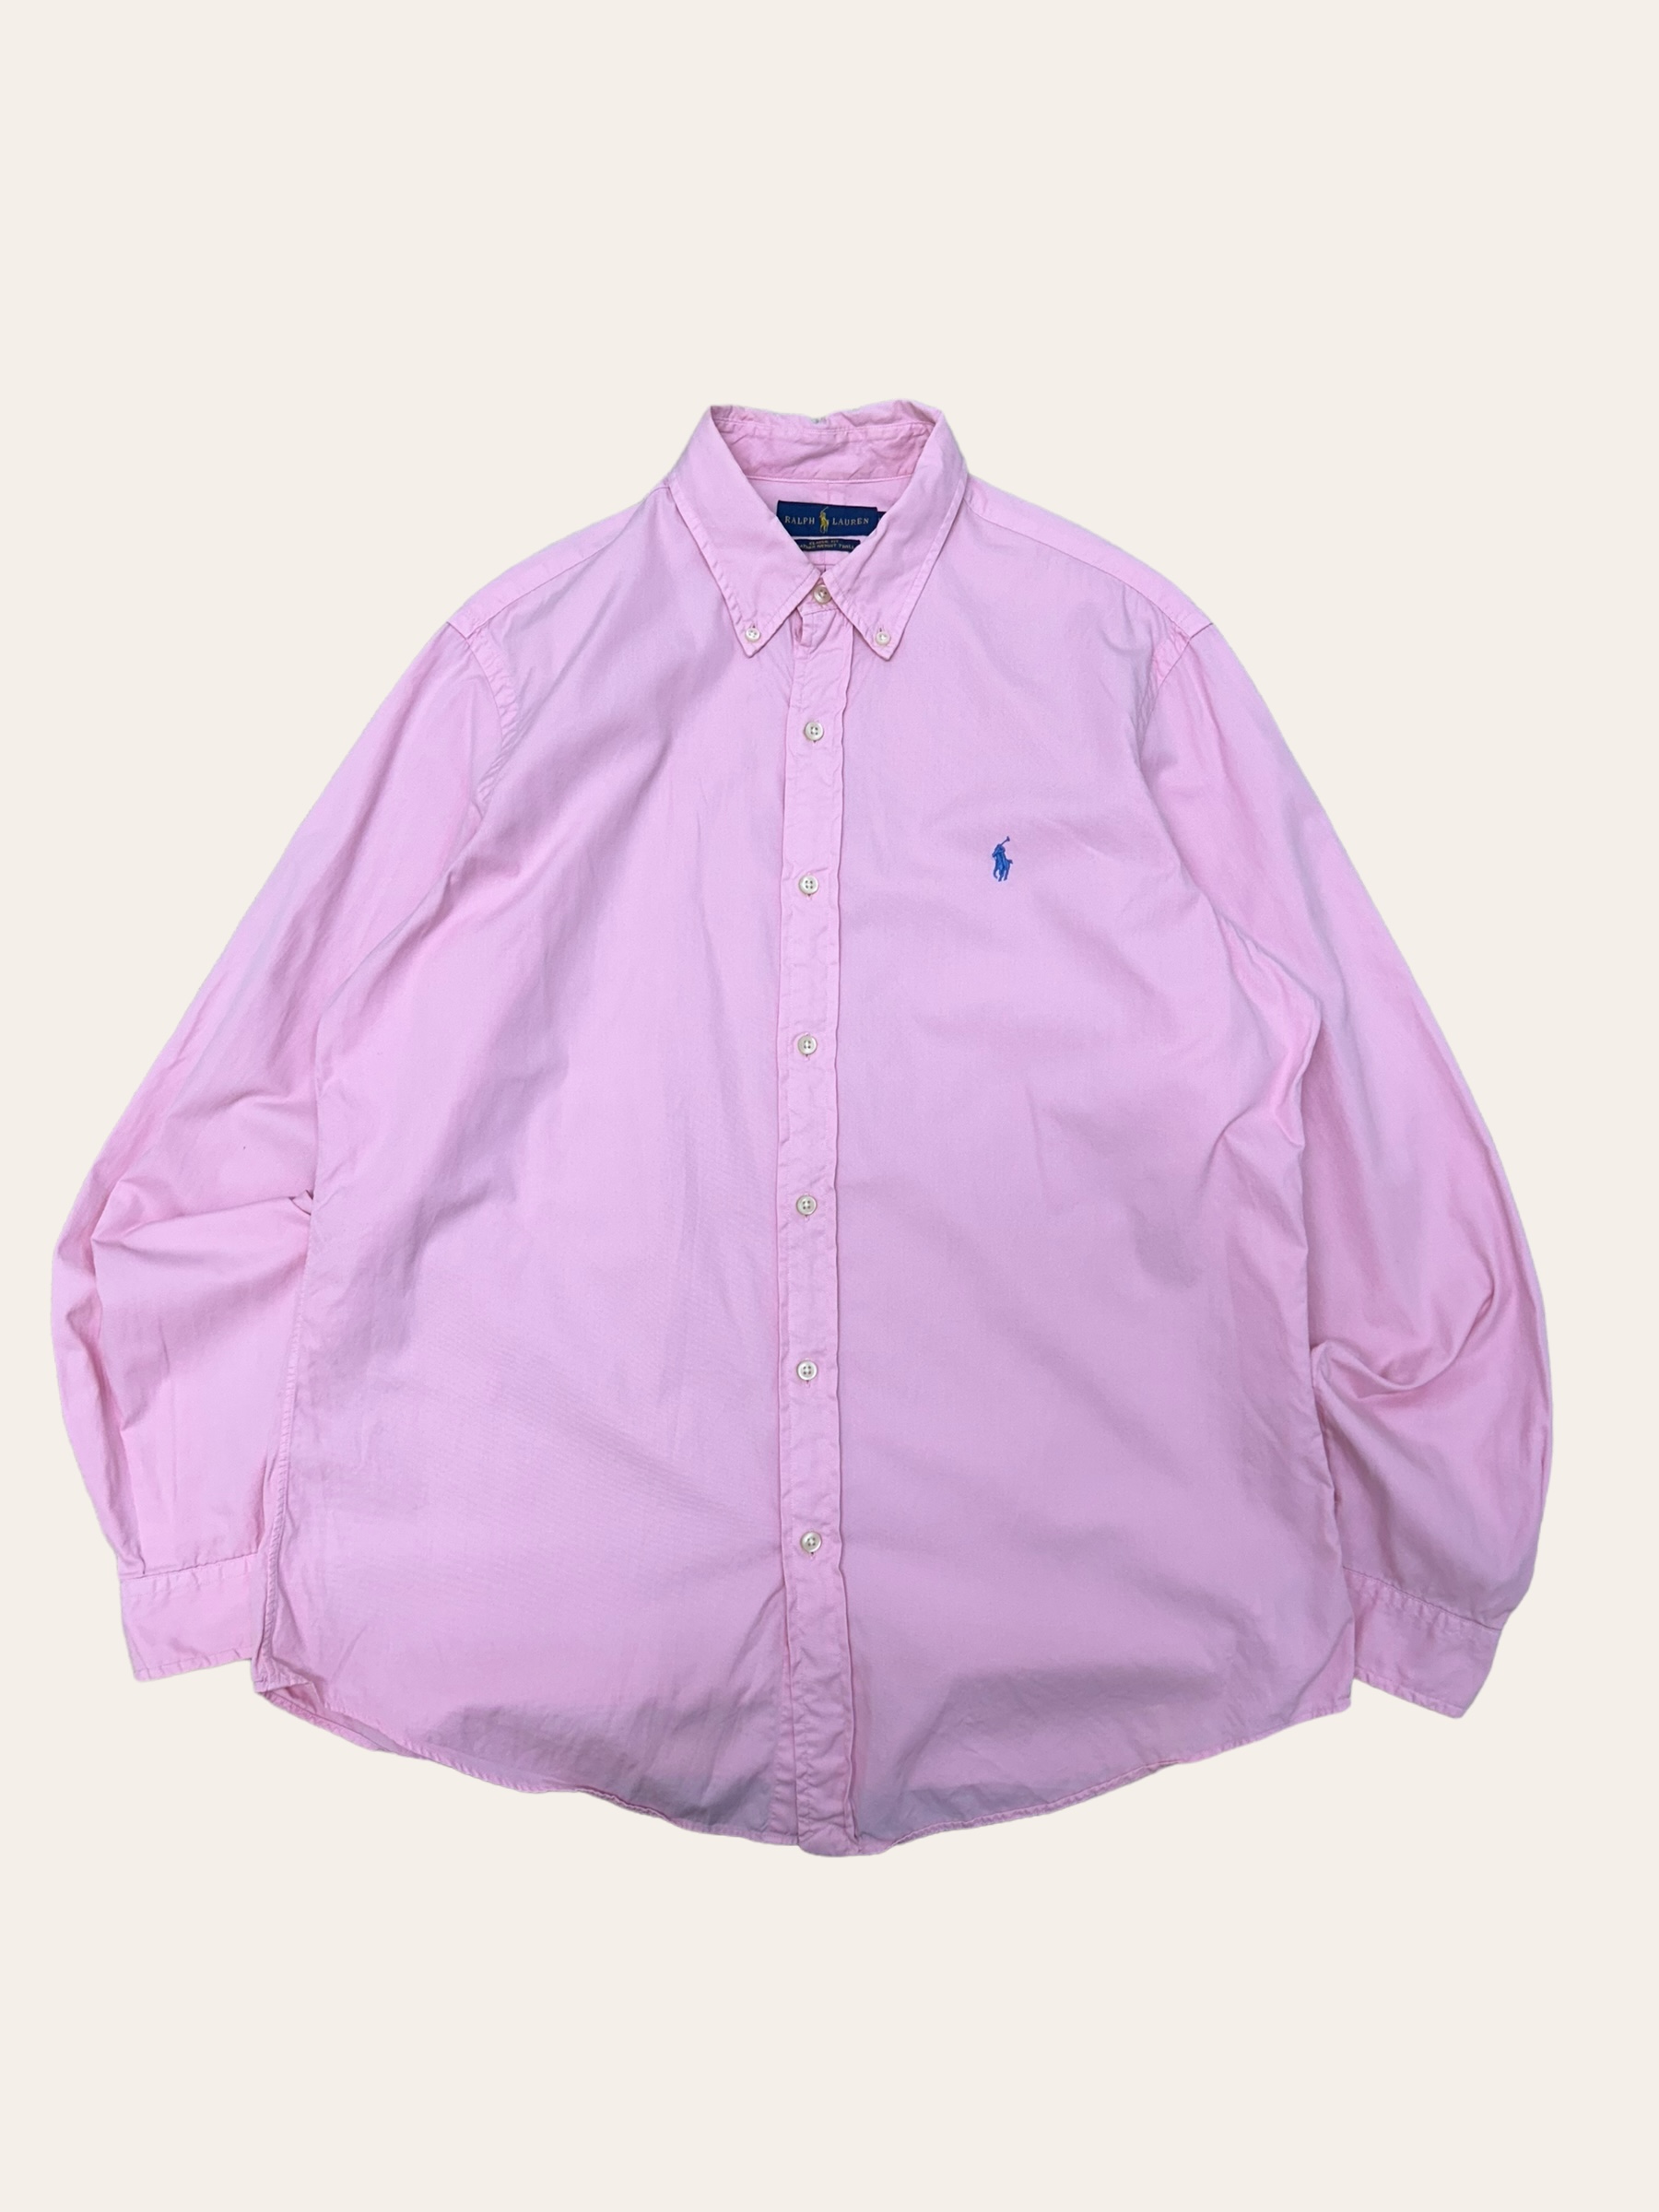 Polo ralph lauren pink poplin shirt L